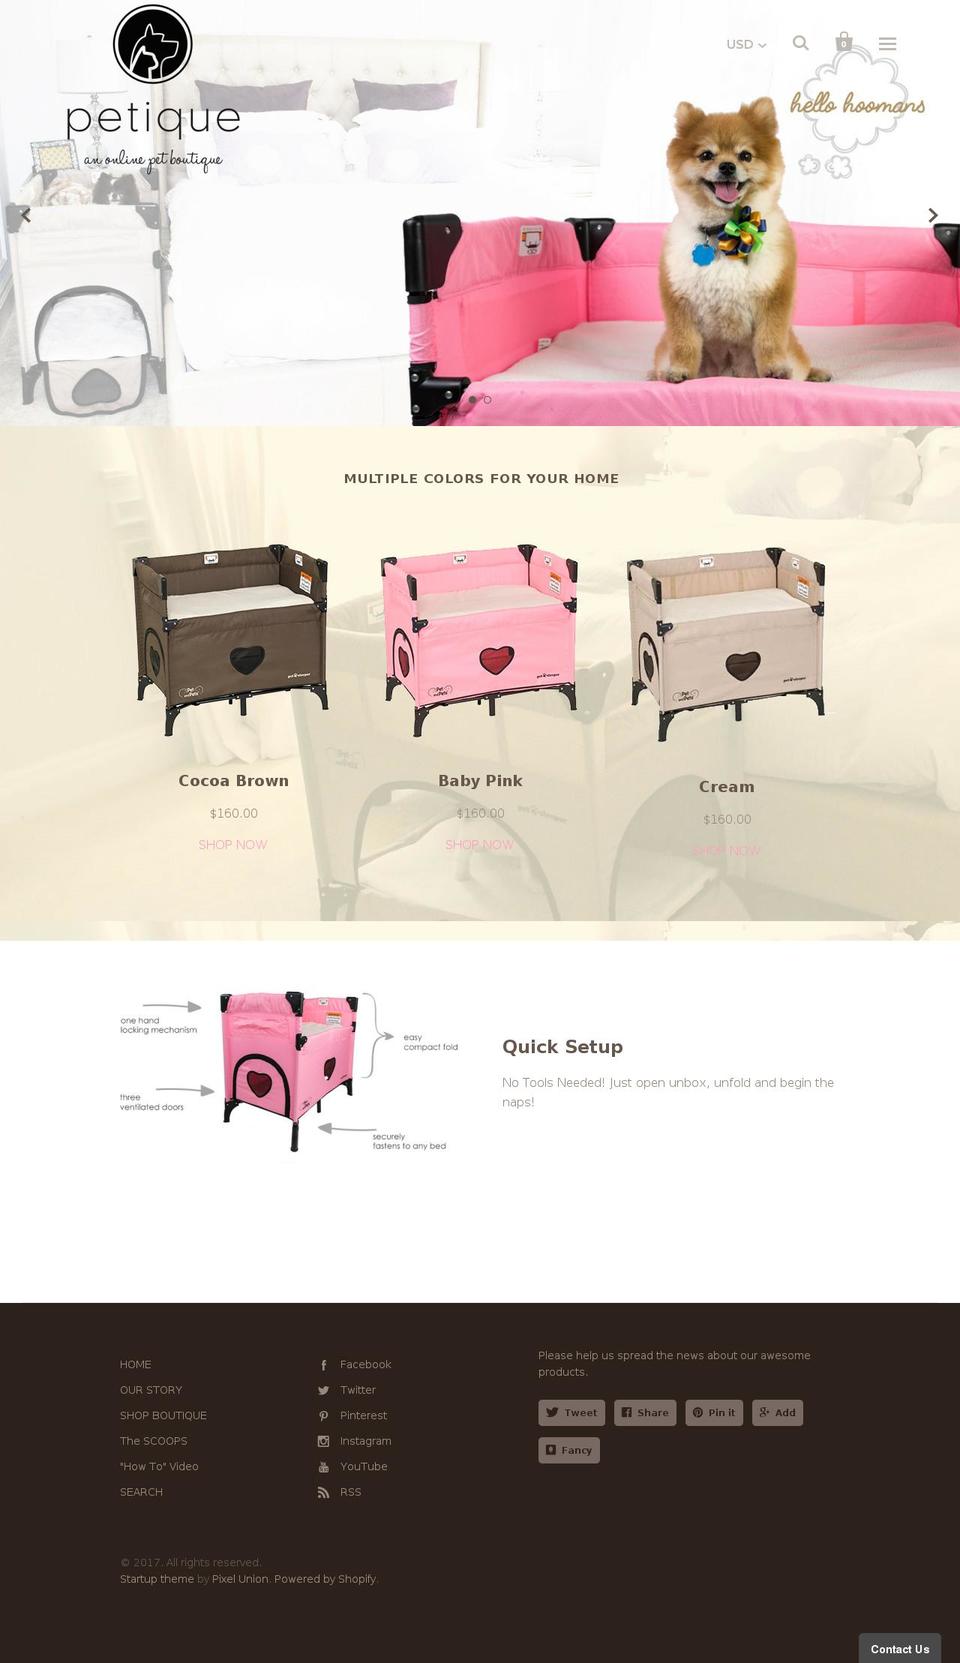 FASTOR Shopify theme site example petique.com